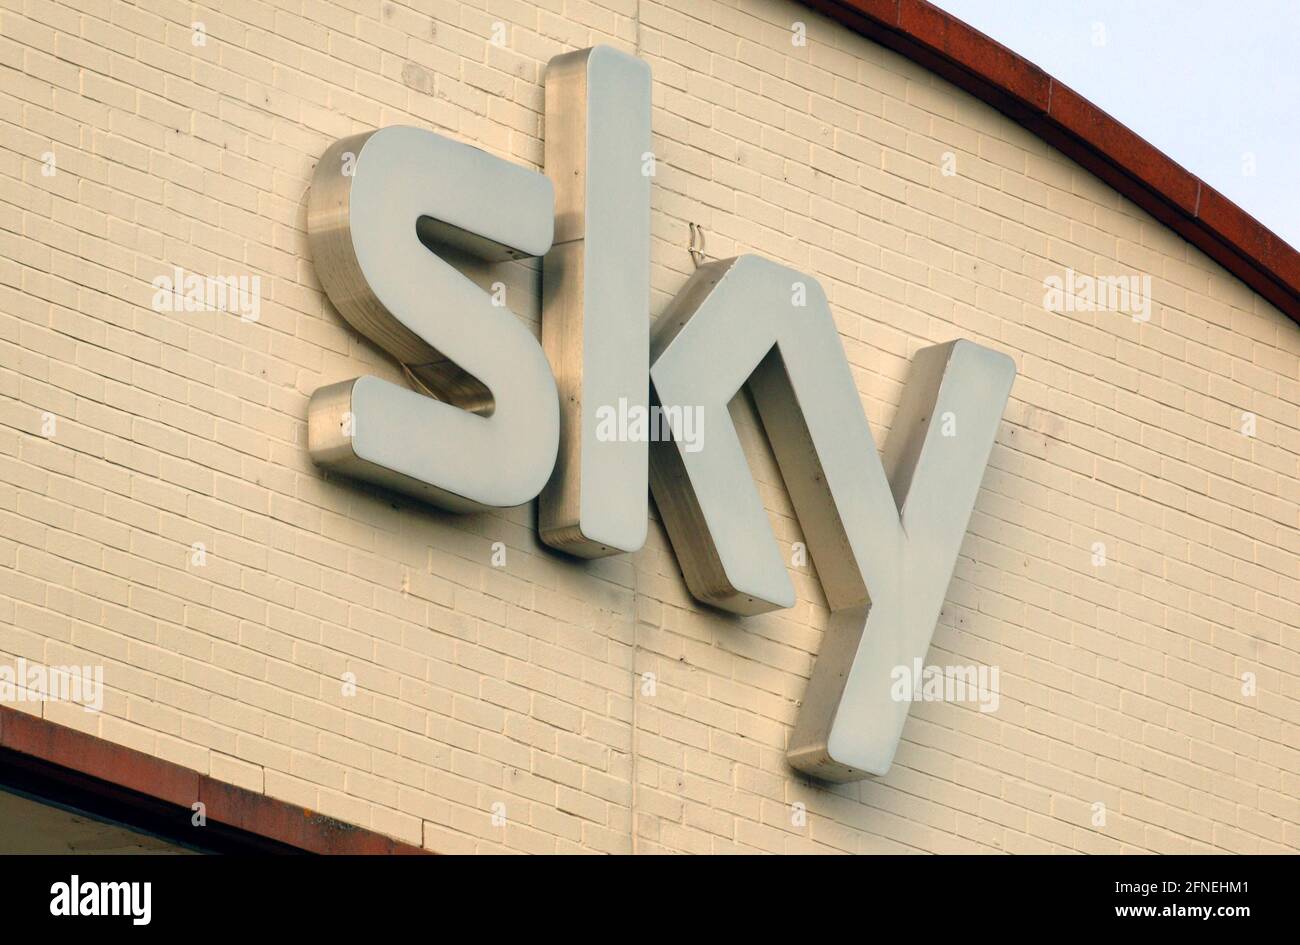 Foto del archivo fechada el 09/08/07 del logotipo de la televisión Sky en sus oficinas en Osterley, al oeste de Londres. Netflix, Sky y Bisha K Ali están apoyando un nuevo programa para apoyar a guionistas de minorías étnicas. Fecha de emisión: Lunes 17 de mayo de 2021. Foto de stock